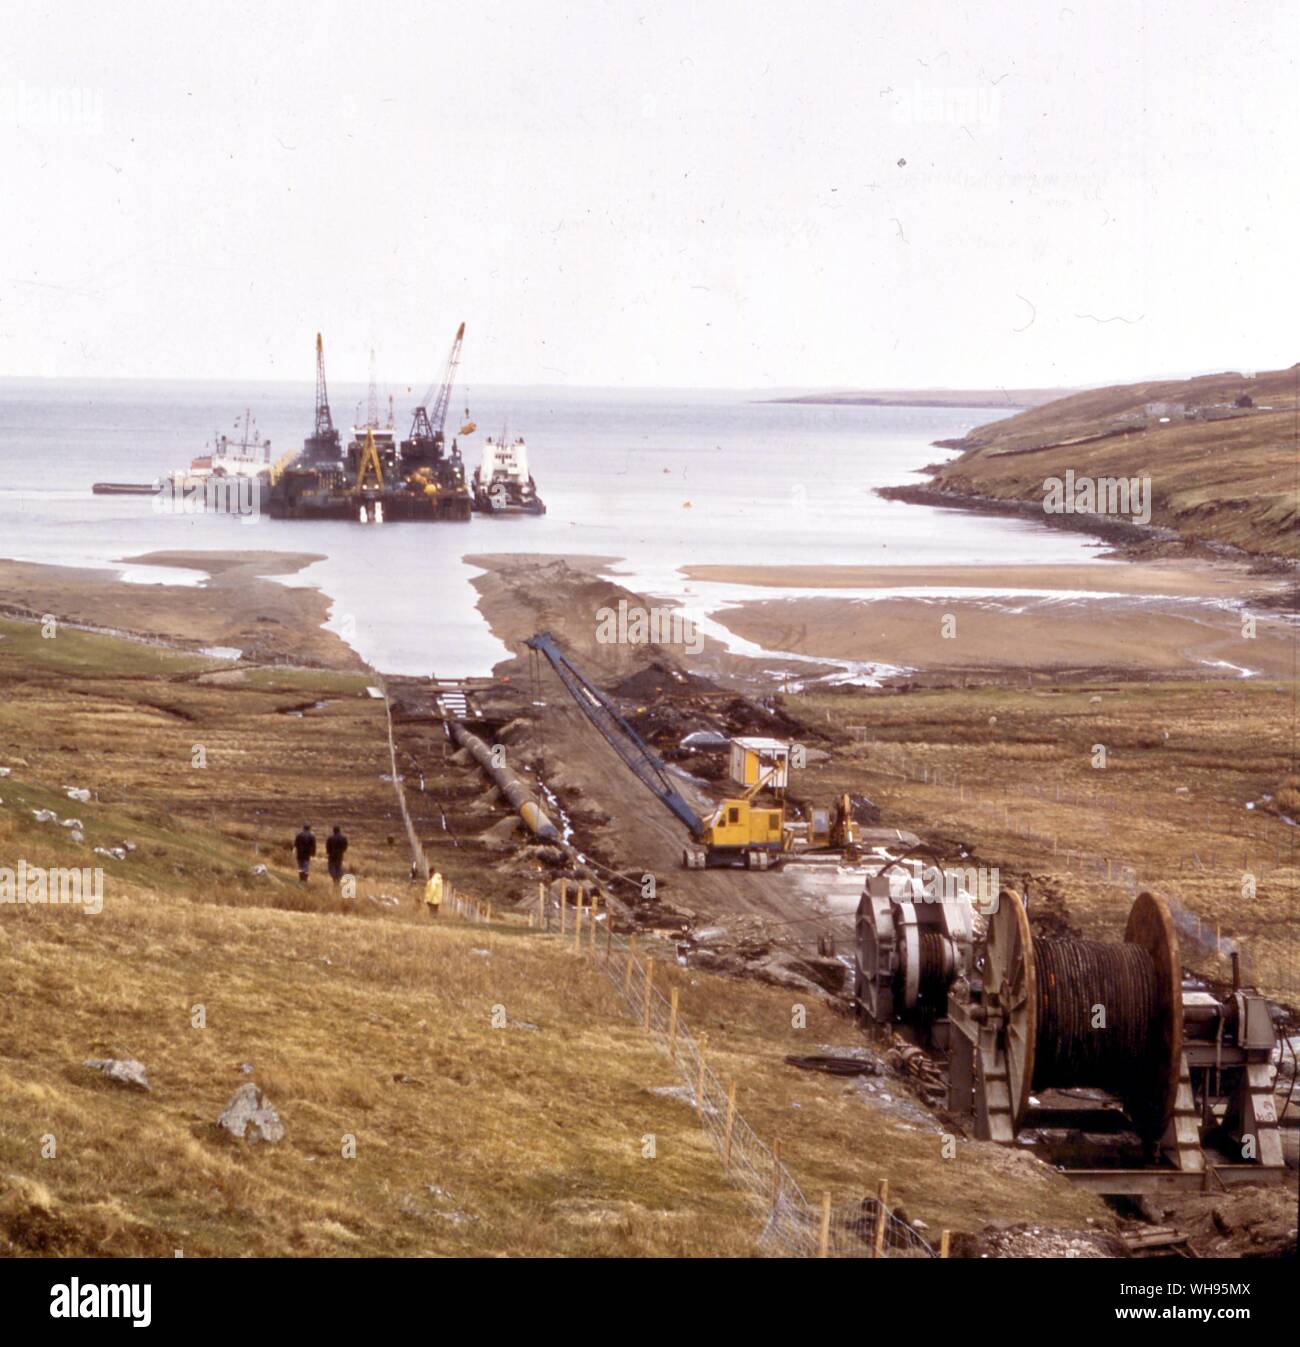 Industrie/off-shore, de la mer du Nord. Première section du système 'Brent' vient de pipeline à terre. Ramené à Firths Voe dans les îles Shetland. Banque D'Images